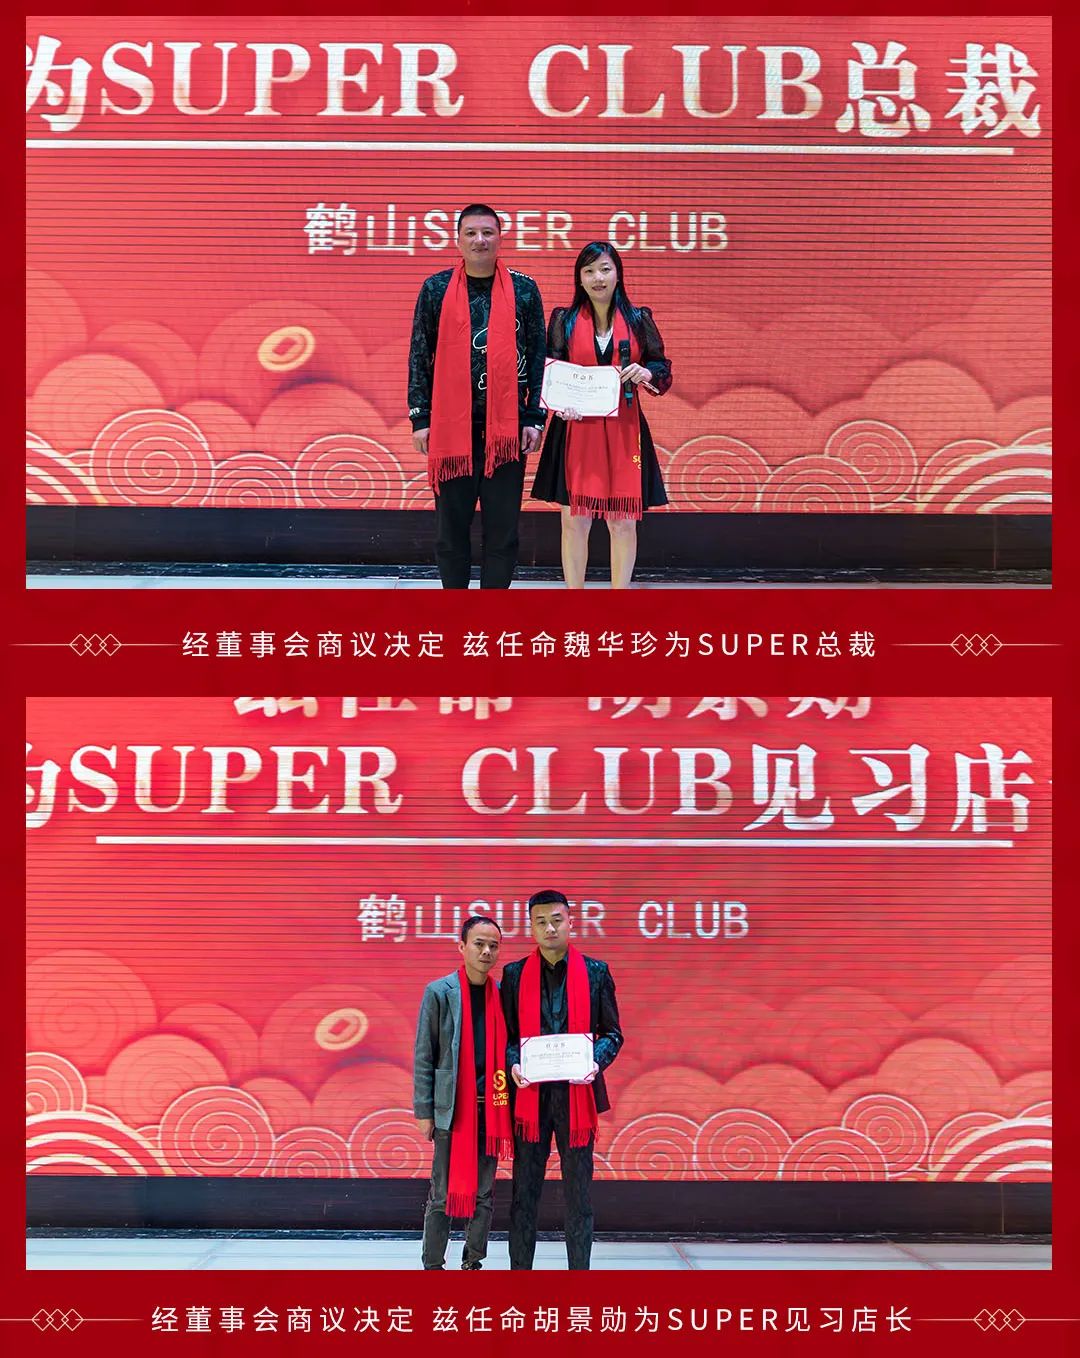 2021年终晚会完美落下帷幕-HESHAN SUPER CLUB-鹤山超级酒吧/Super Club